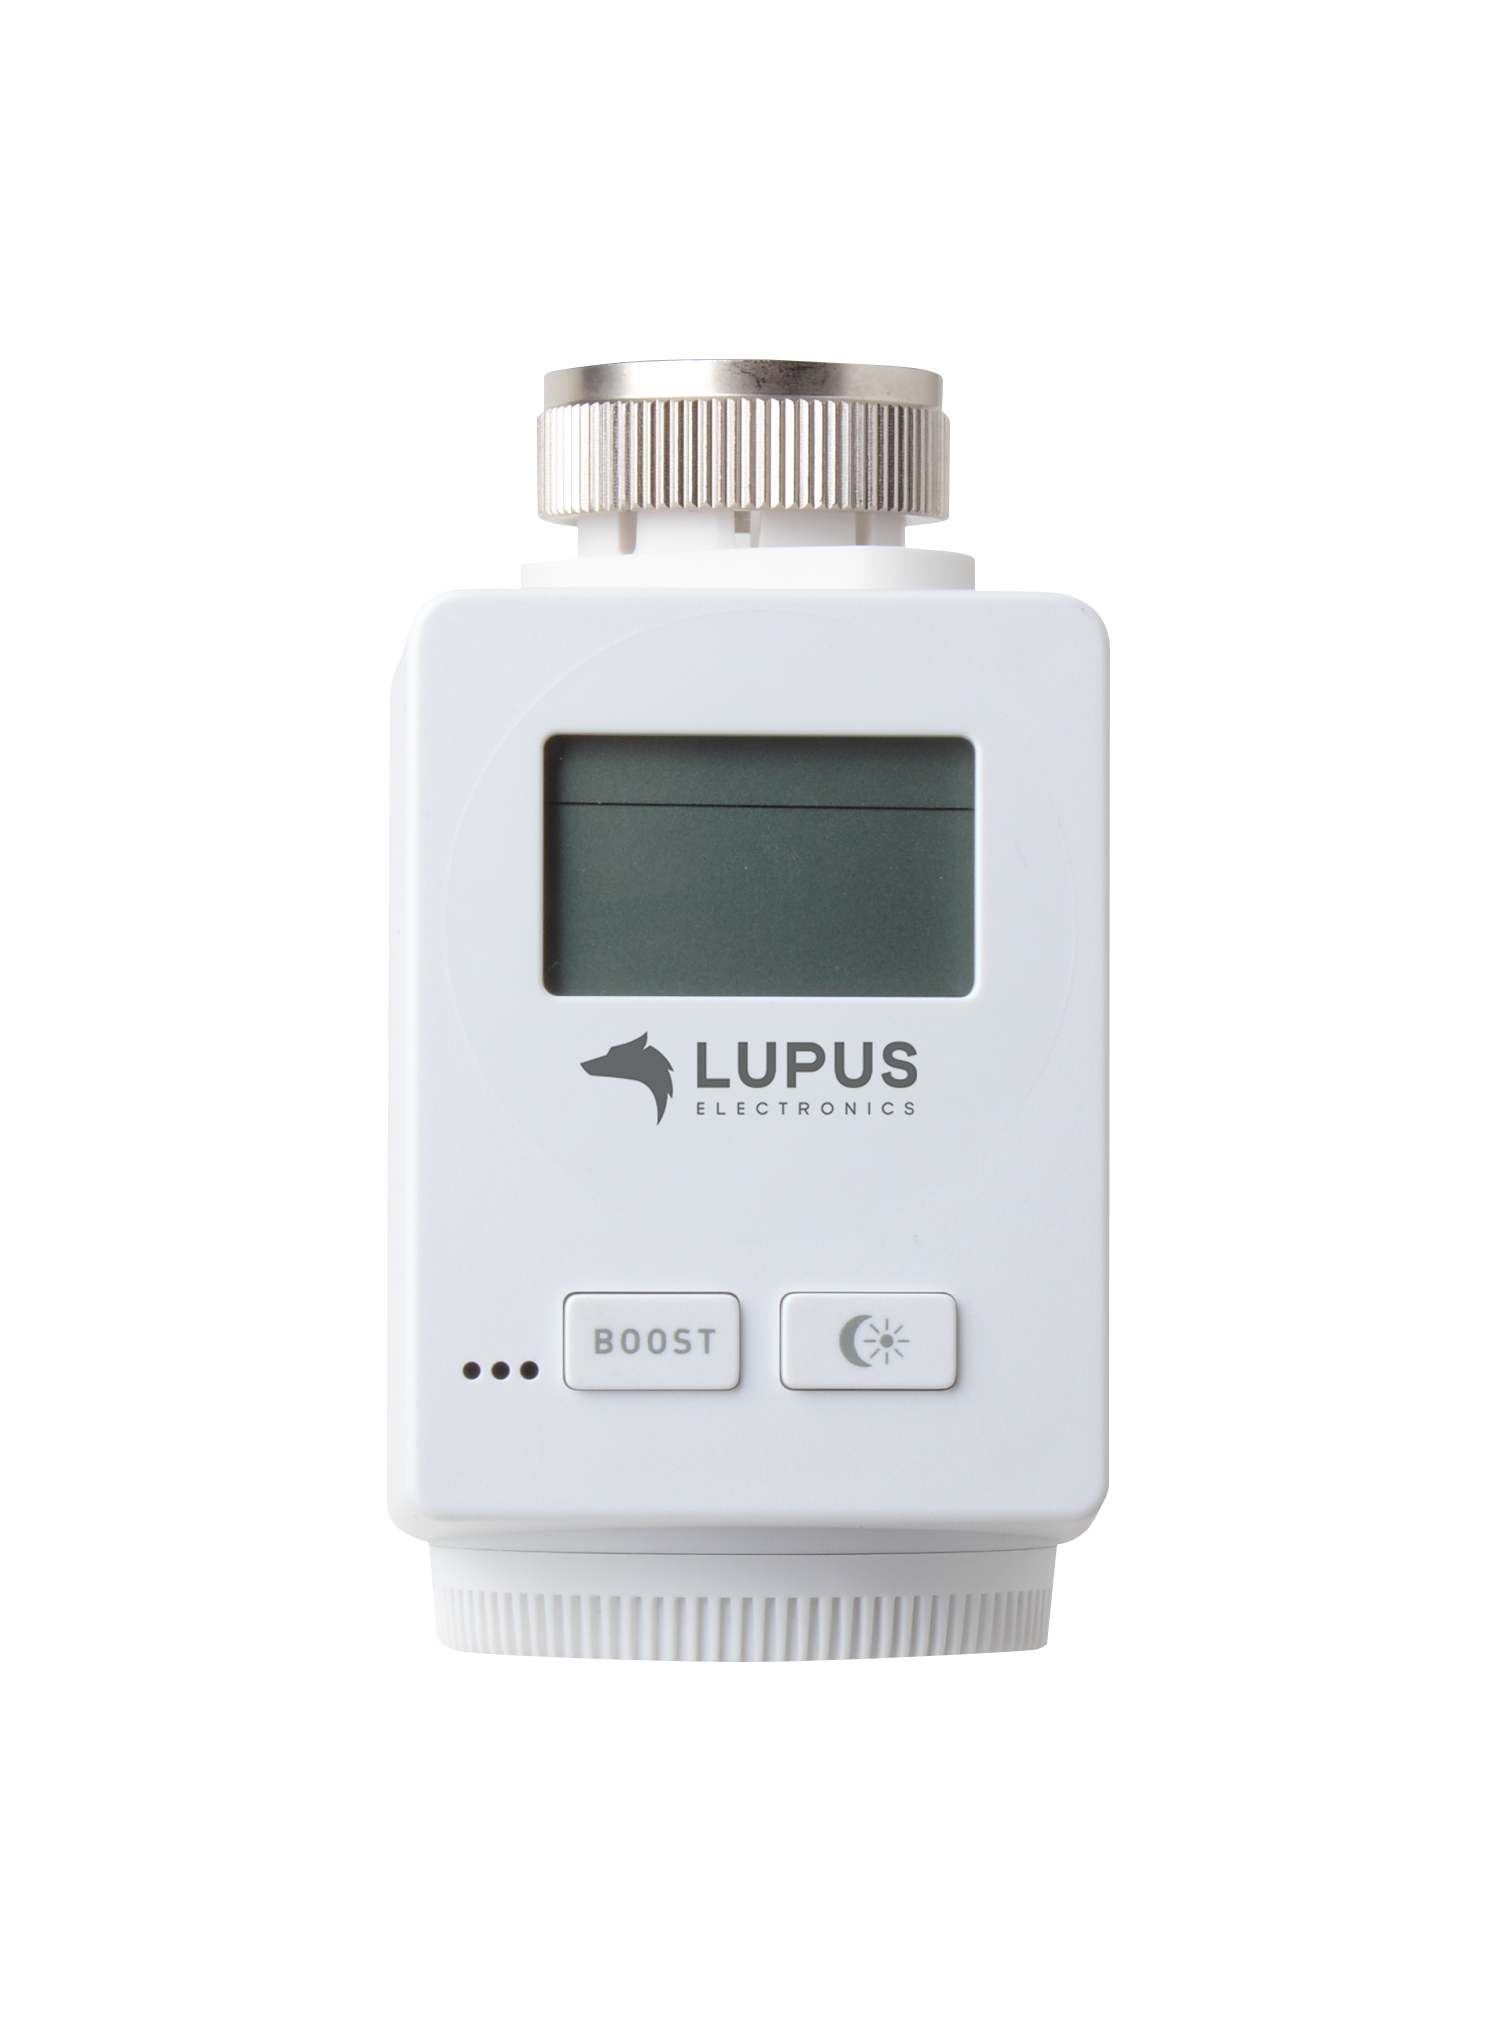 LUPUS - Heizkörperthermostat V2